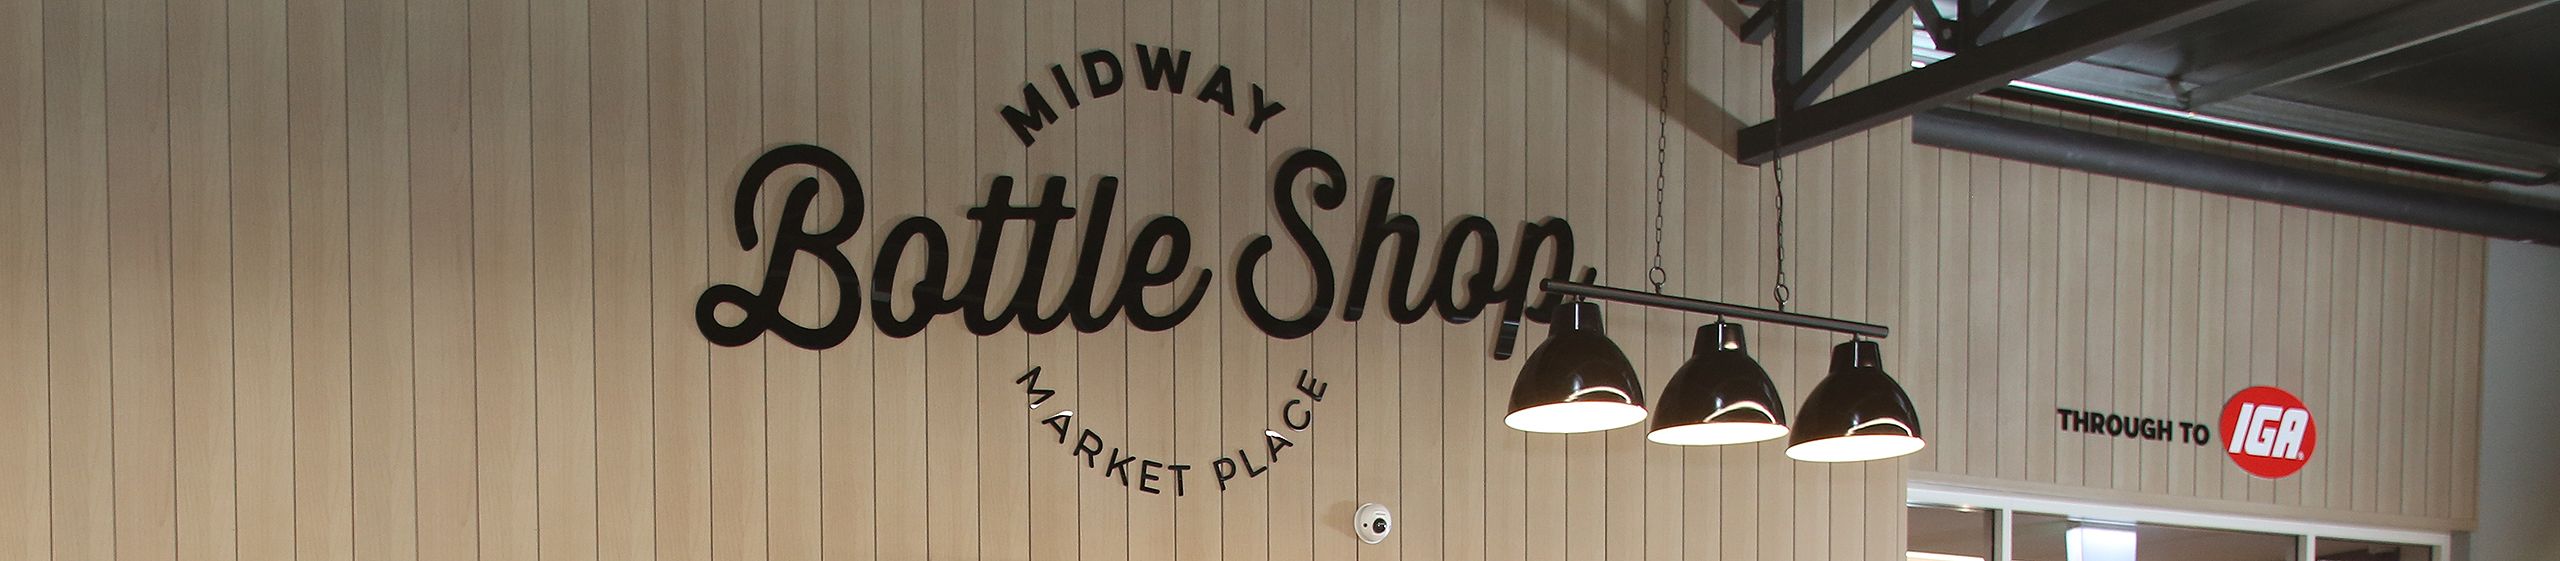 Midway Market Place Bottle Shop